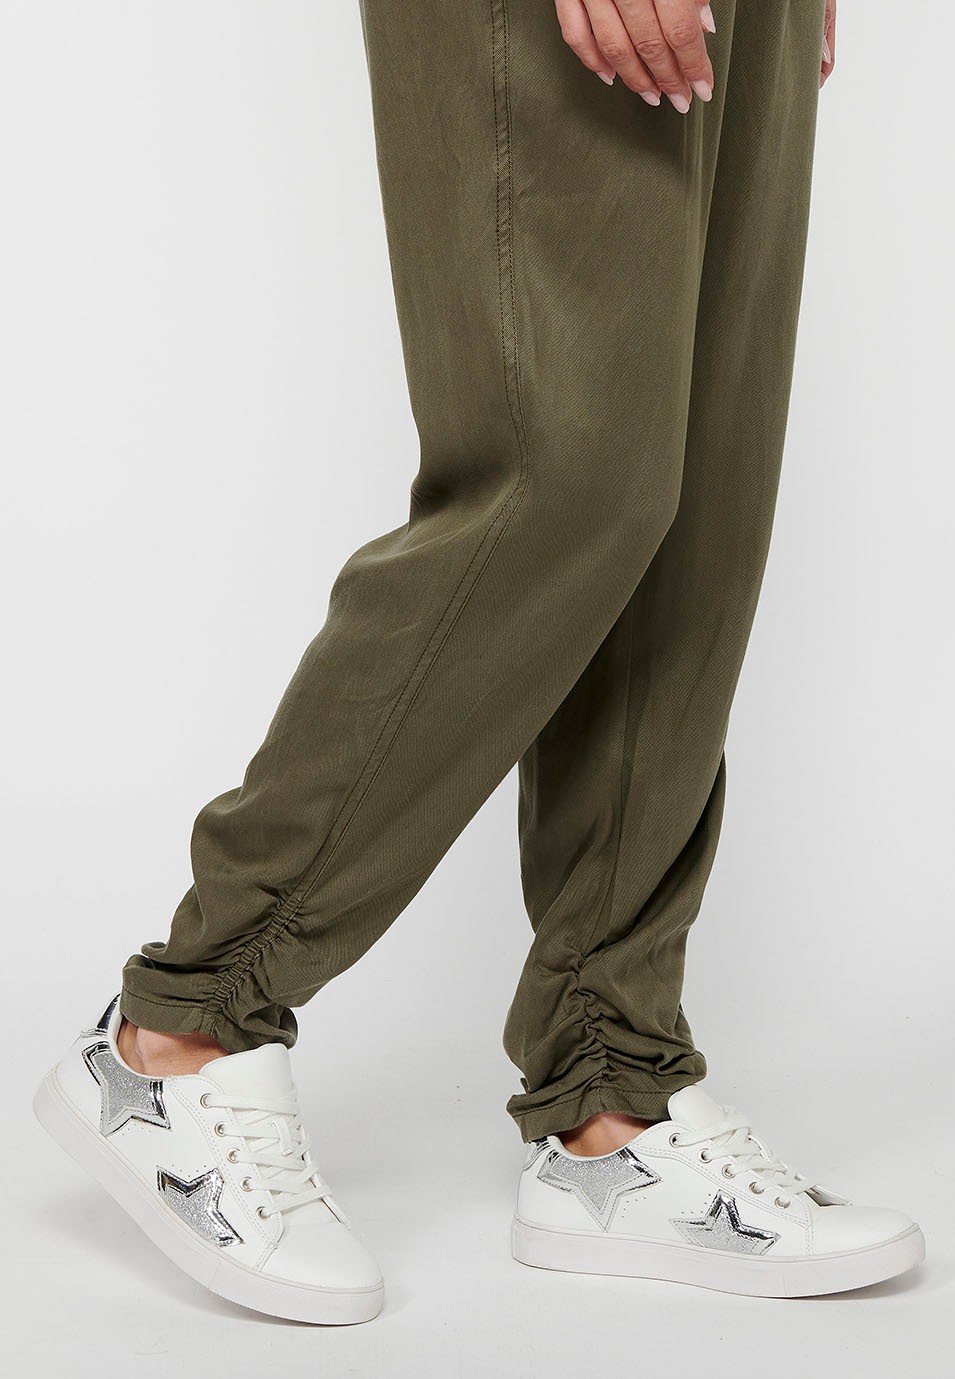 Pantalón largo jogger con Acabado rizado y Cintura engomada con Cuatro bolsillos, dos traseros con solapa de Color Kaki para Mujer 8